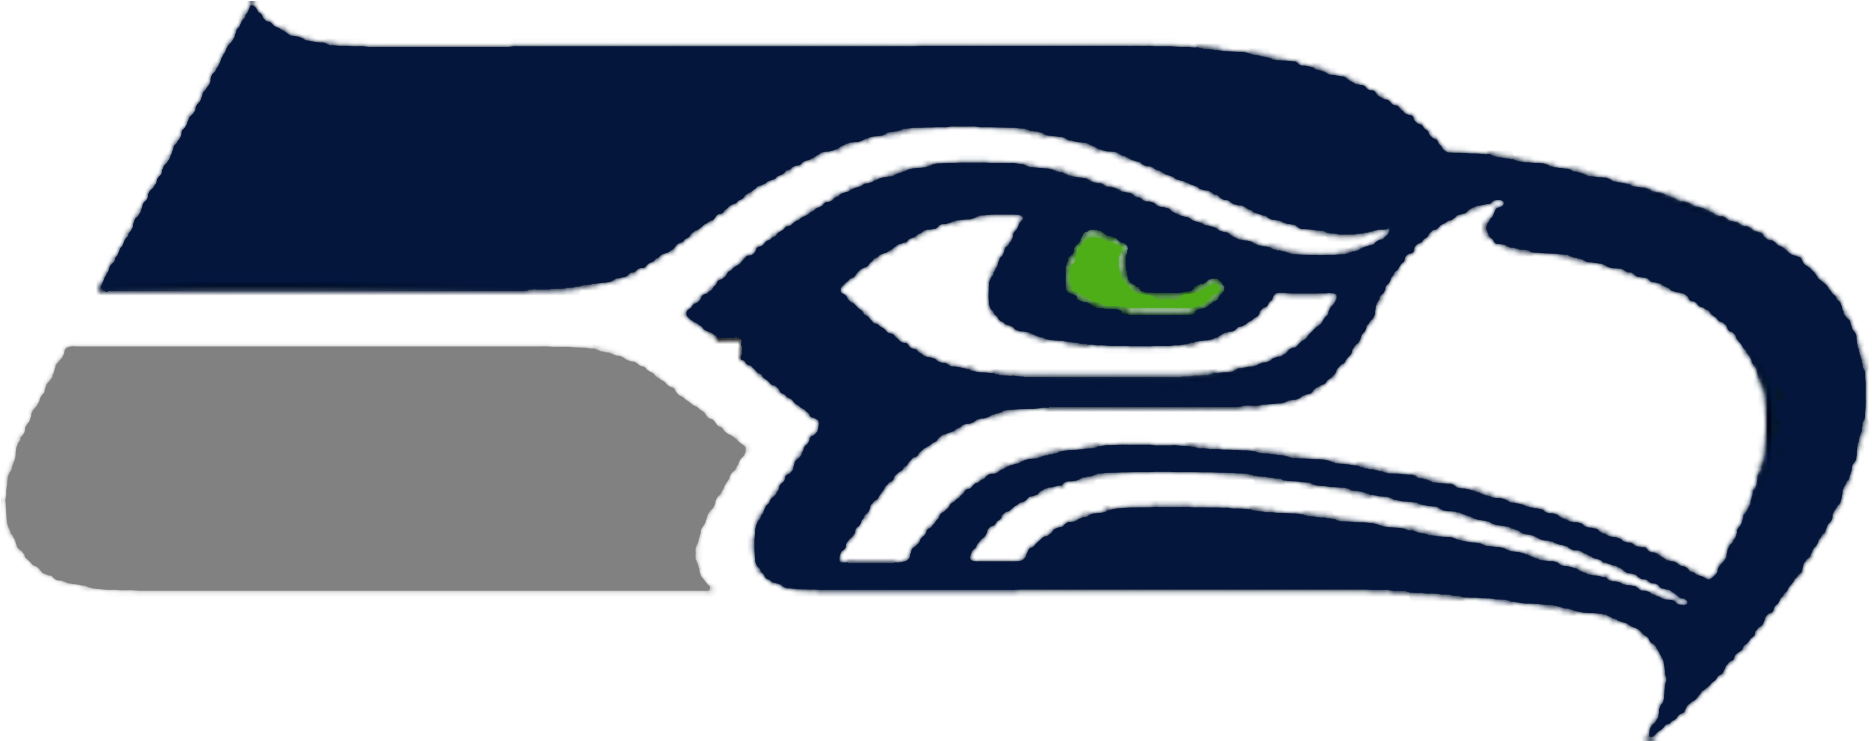 Seahawkslogo - Seattle Seahawks Logo (1871x826), Png Download